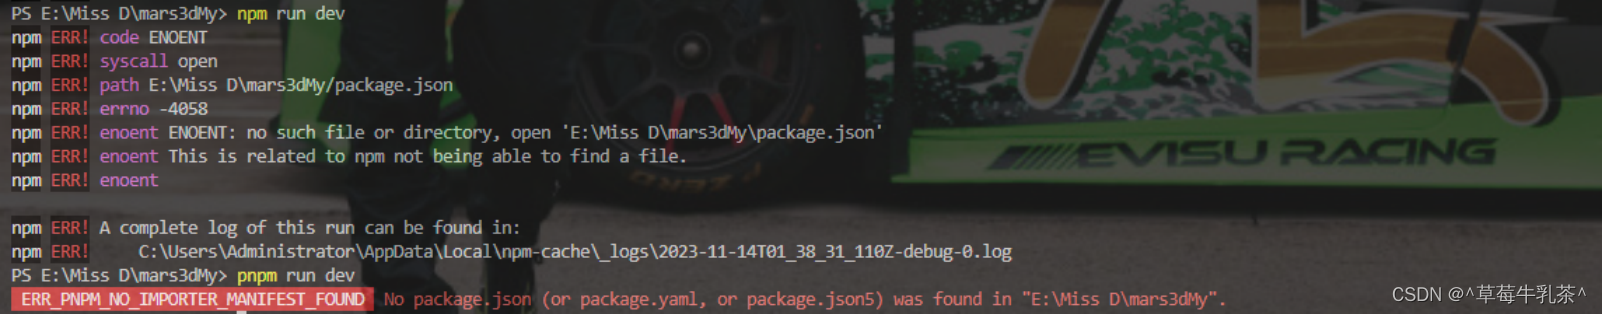 【ERROR】ERR_PNPM_NO_IMPORTER_MANIFEST_FOUND No package.json